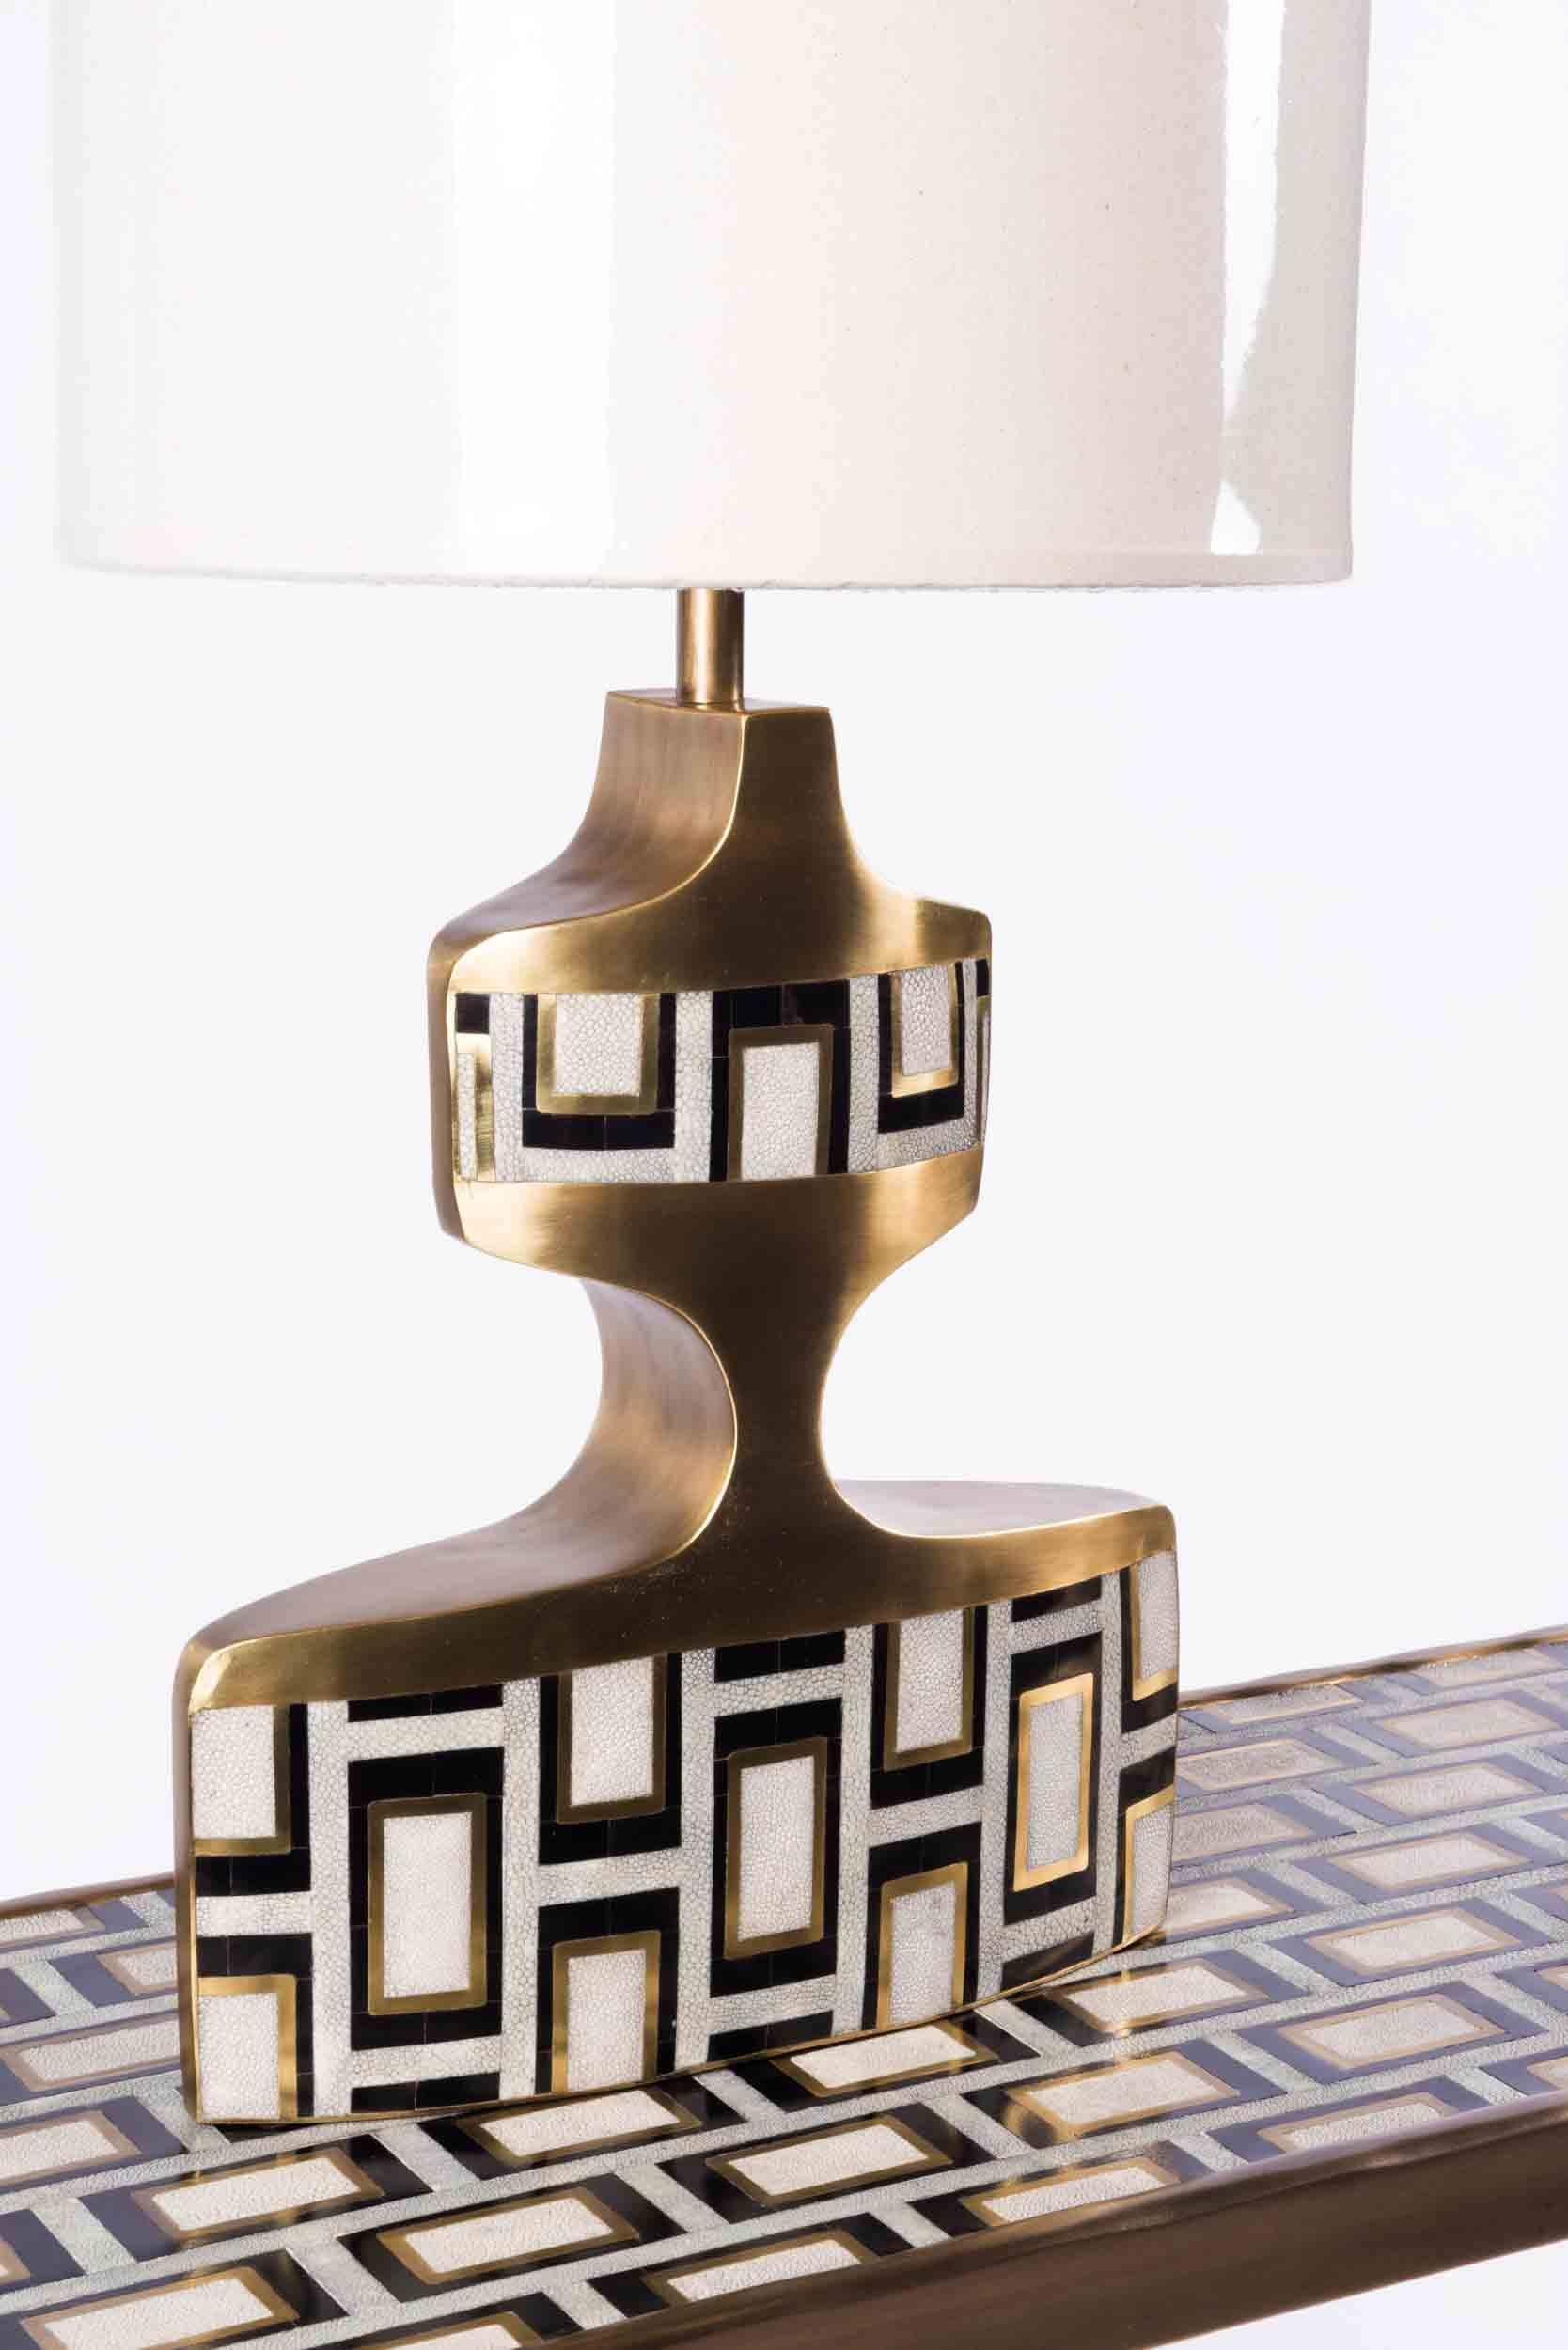 Die geometrische Lampe ist ein skulpturales Stück mit schönen Einlegearbeiten. Diese Tischleuchte zeichnet sich durch ein kühnes Blockmuster in einer Mischung aus cremefarbenem Chagrin, schwarzer Federschale und bronzefarbenem patiniertem Messing